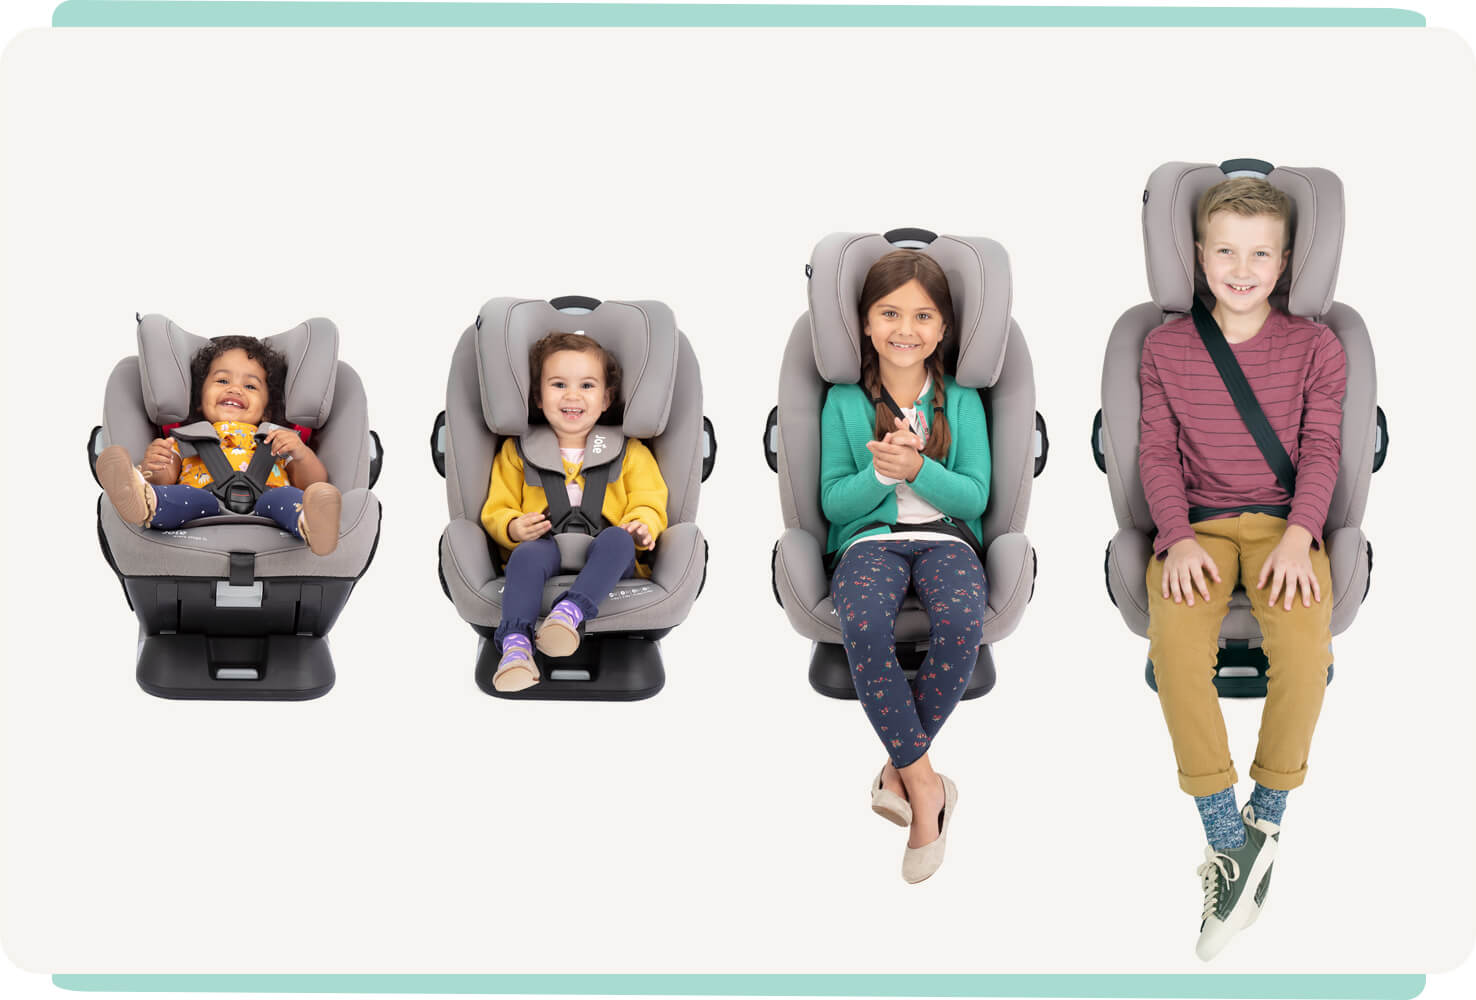  4 Kinder unterschiedlichen Alters sitzen nebeneinander in grauen Joie Every Stage FX Autokindersitzen: von links nach rechts ein Baby, ein Kleinkind, ein kleines Kind und ein älteres Kind.